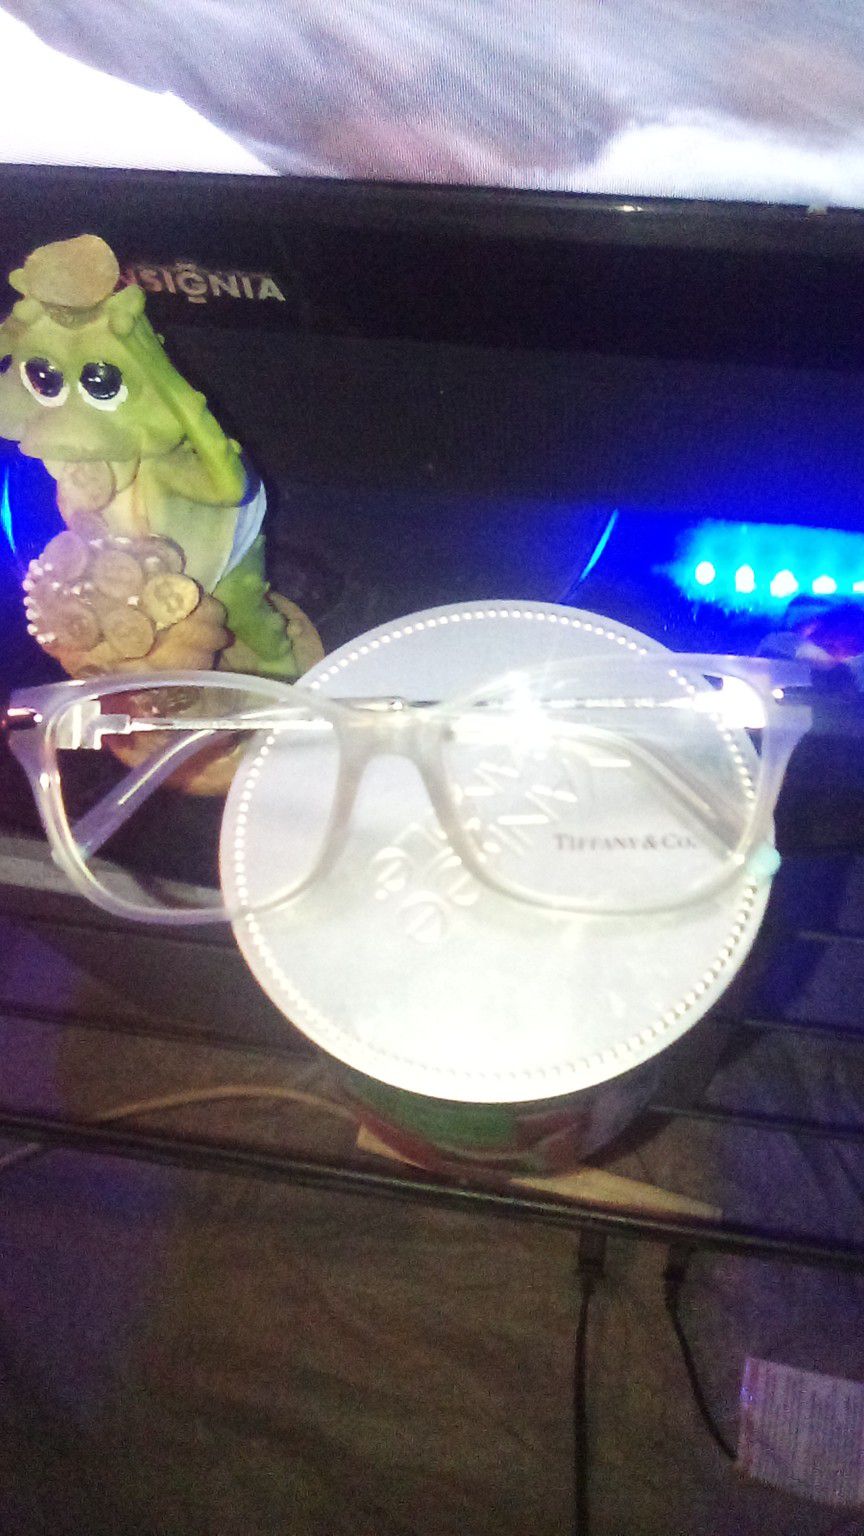 Tiffany & Company Glasses